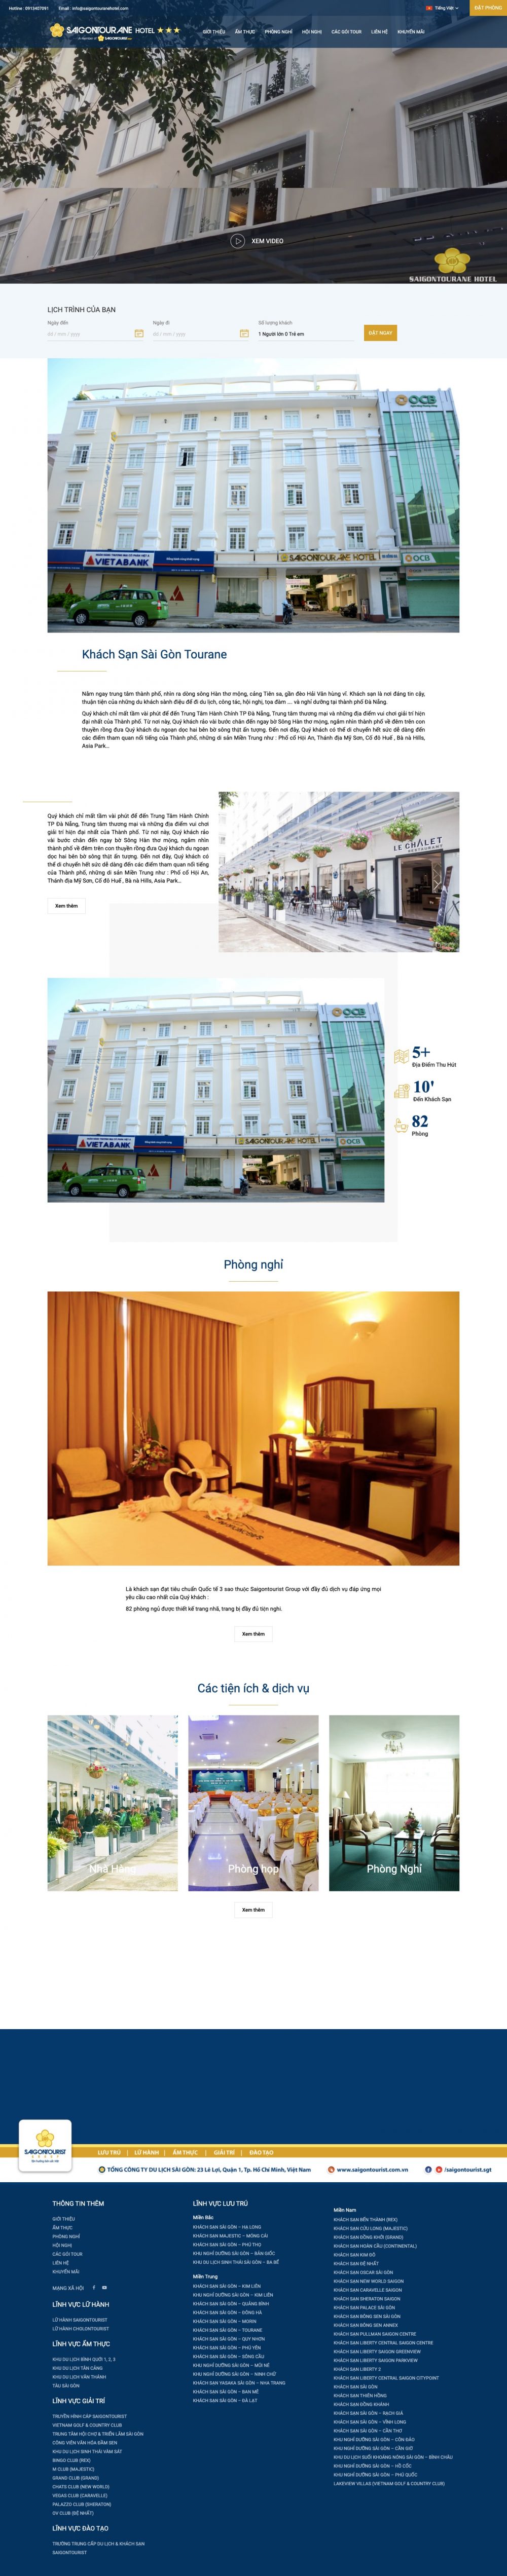 Khách sạn Sài Gòn – Tourane